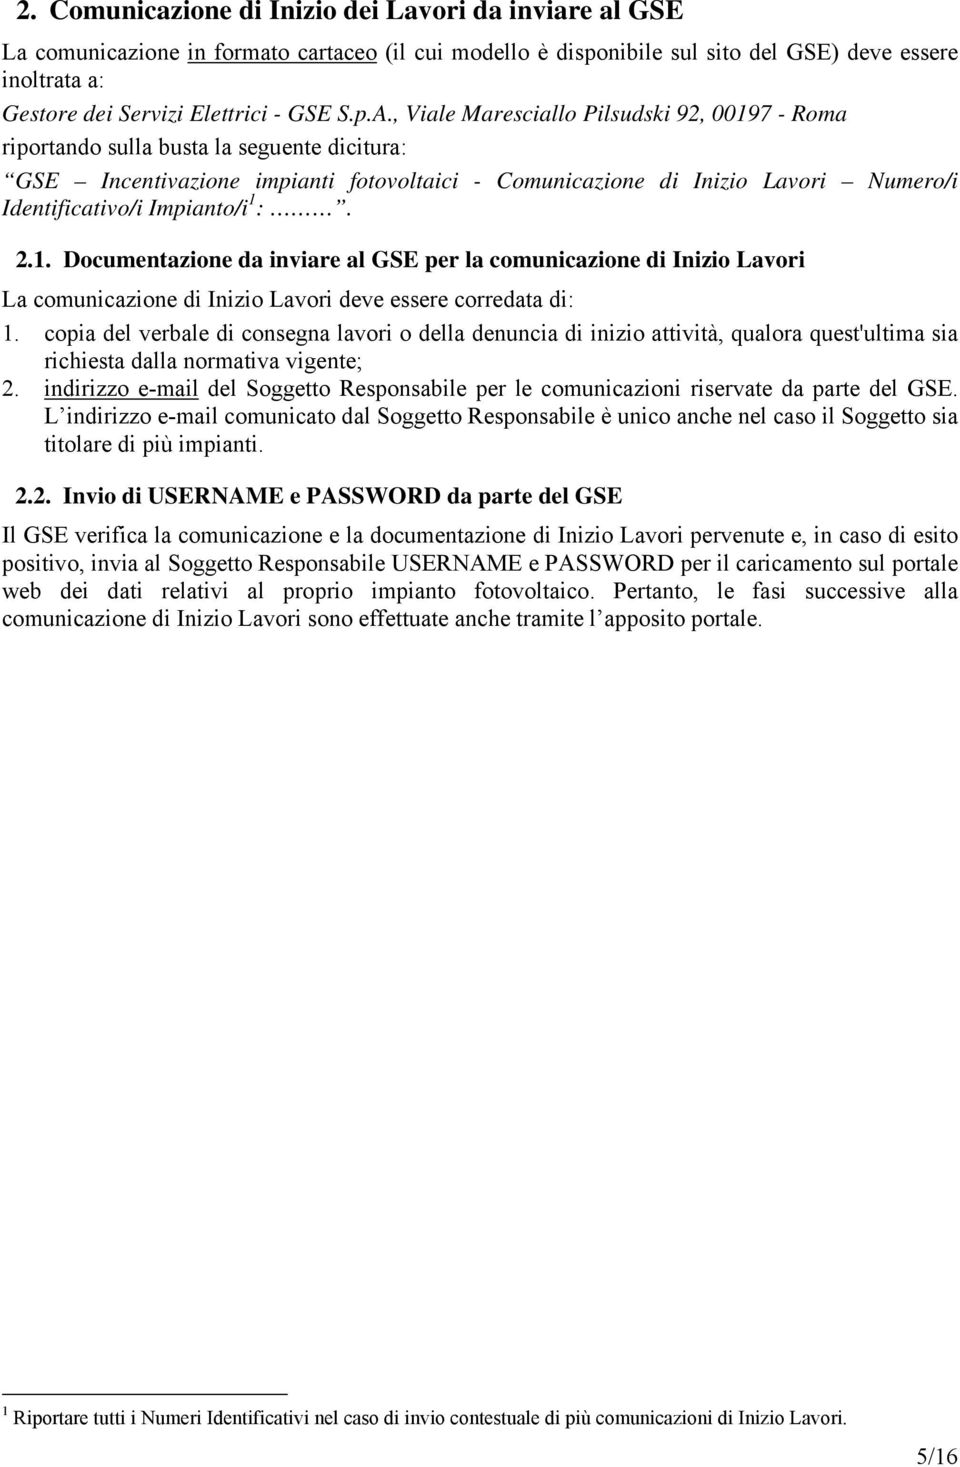 , Viale Maresciallo Pilsudski 92, 00197 - Roma riportando sulla busta la seguente dicitura: GSE Incentivazione impianti fotovoltaici - Comunicazione di Inizio Lavori Numero/i Identificativo/i